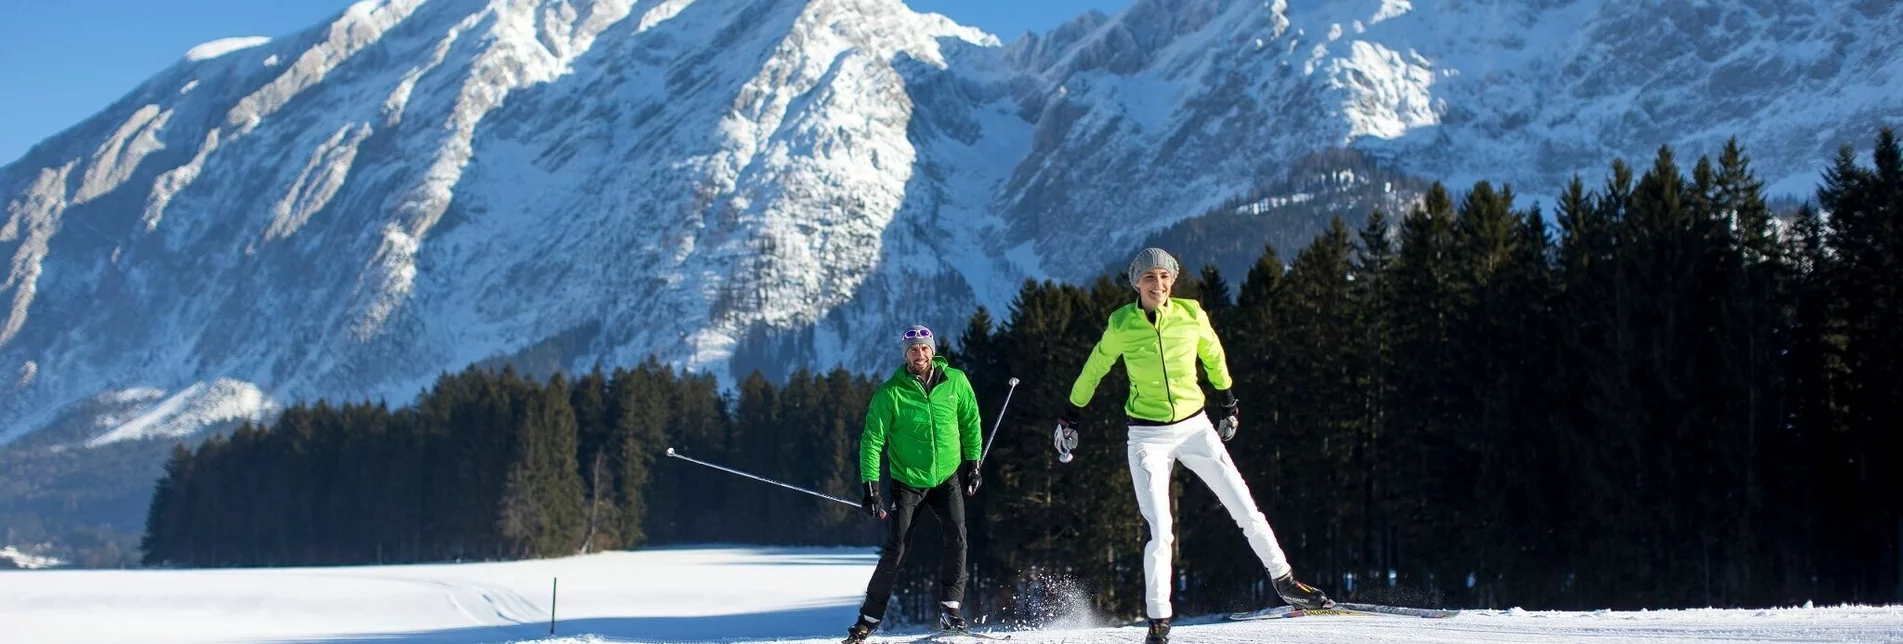 Cross-Country Skiing Kulm cross-country skiing trail (M1) - Touren-Impression #1 | © Ausseerland